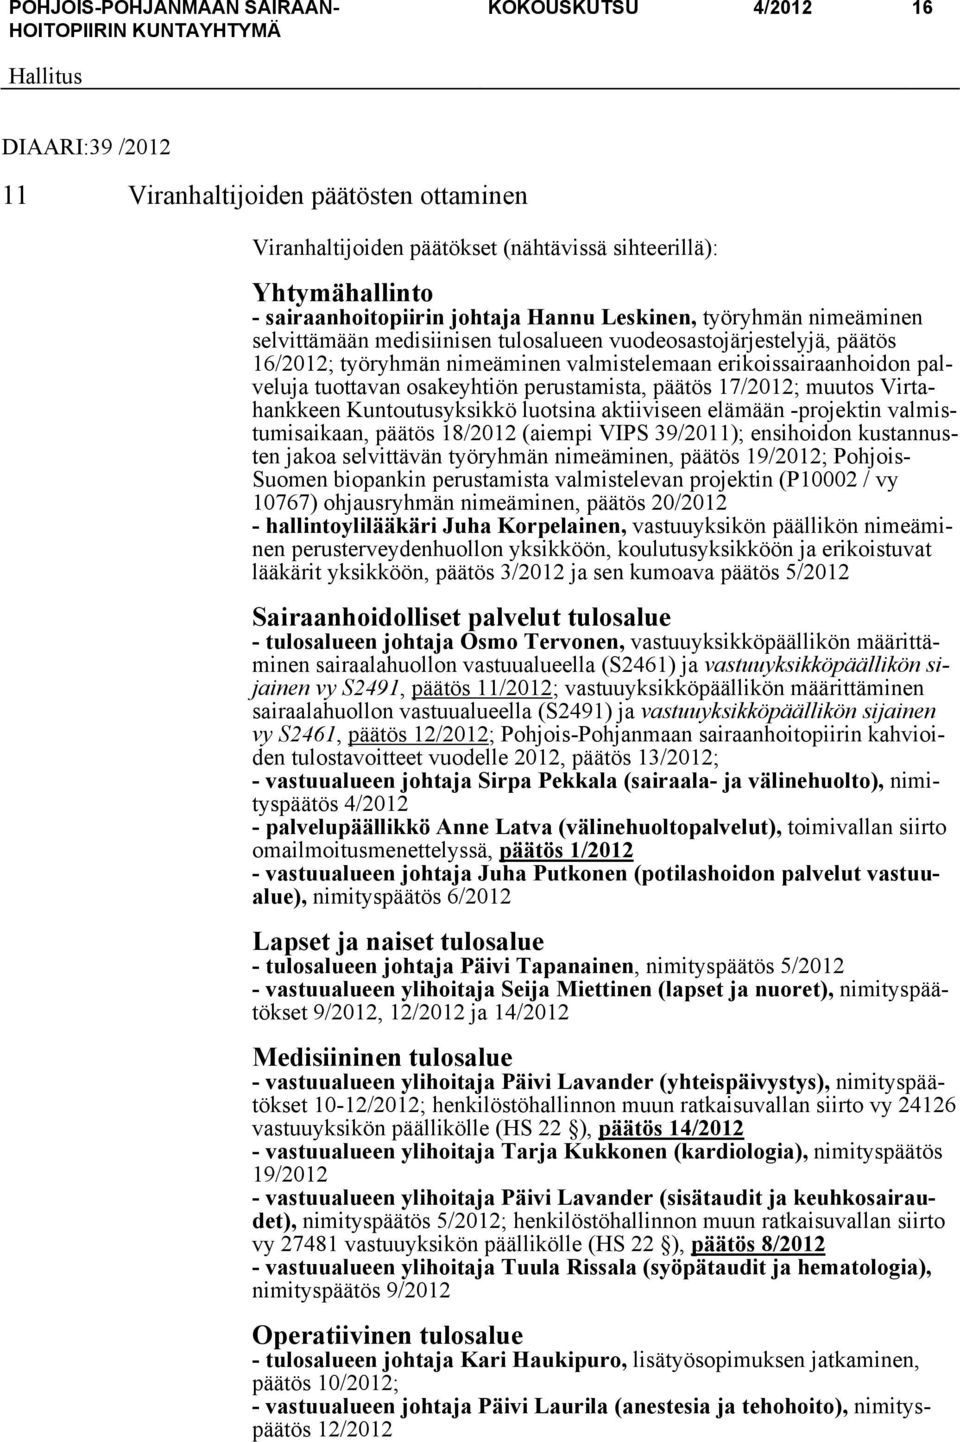 perustamista, päätös 17/2012; muutos Virtahankkeen Kuntoutusyksikkö luotsina aktiiviseen elämään -projektin valmistumisaikaan, päätös 18/2012 (aiempi VIPS 39/2011); ensihoidon kustannusten jakoa